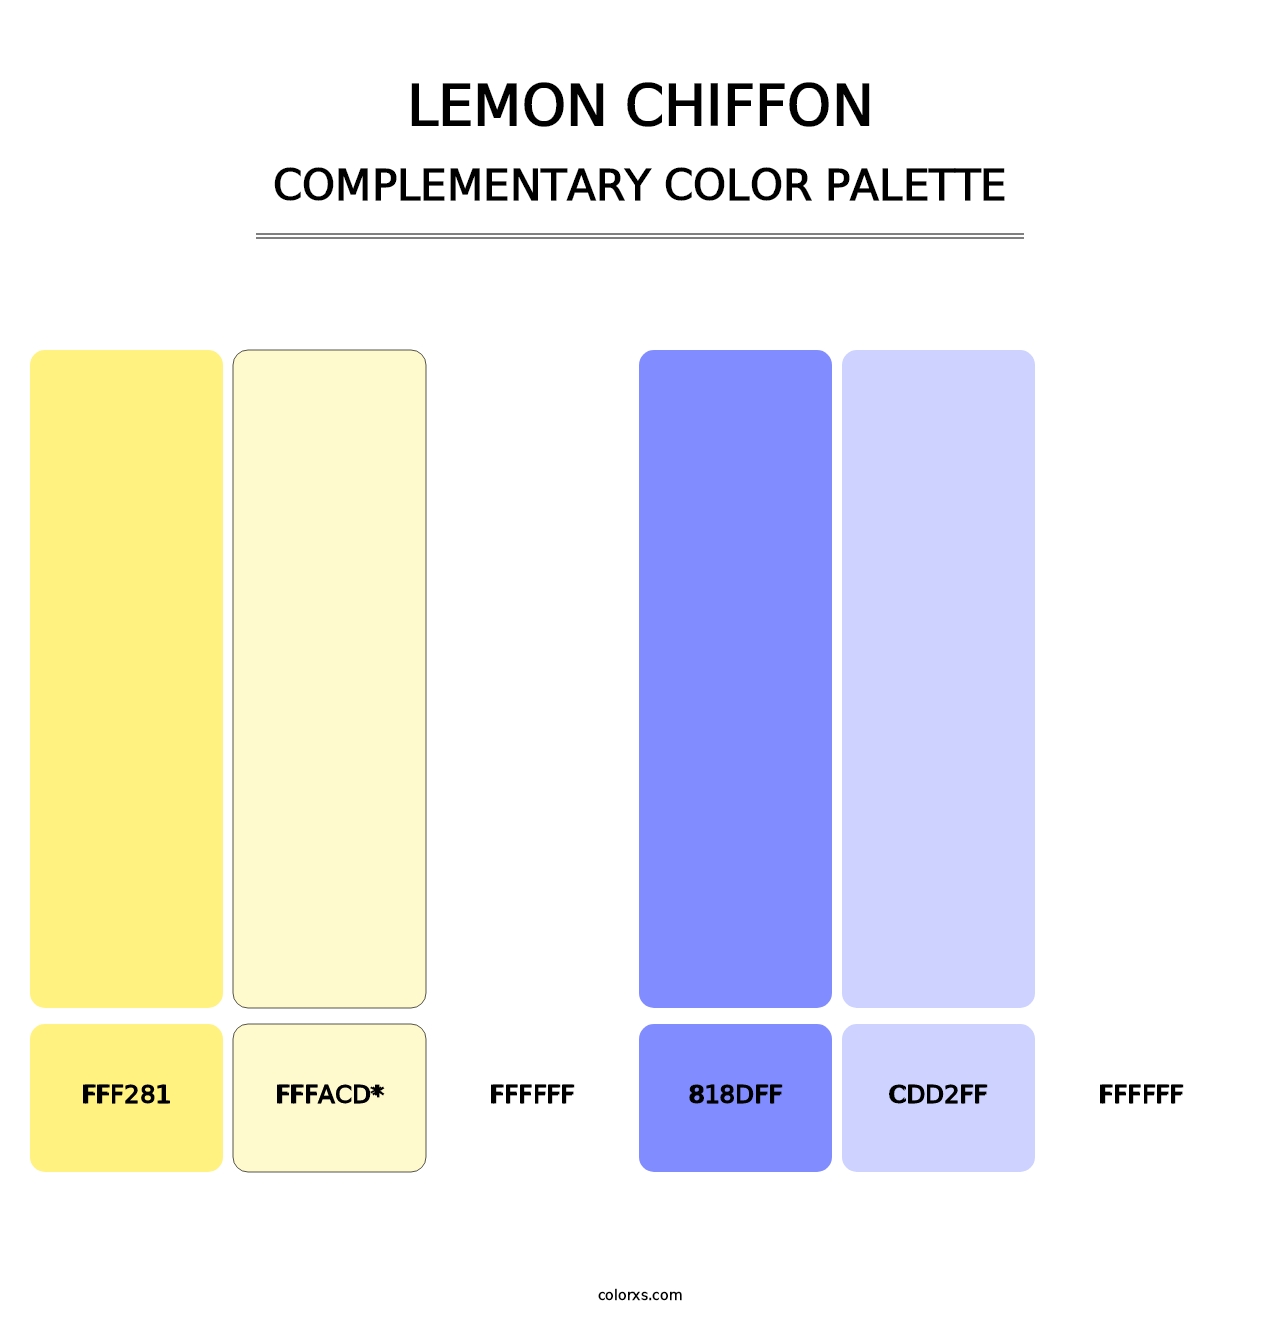 Lemon Chiffon - Complementary Color Palette